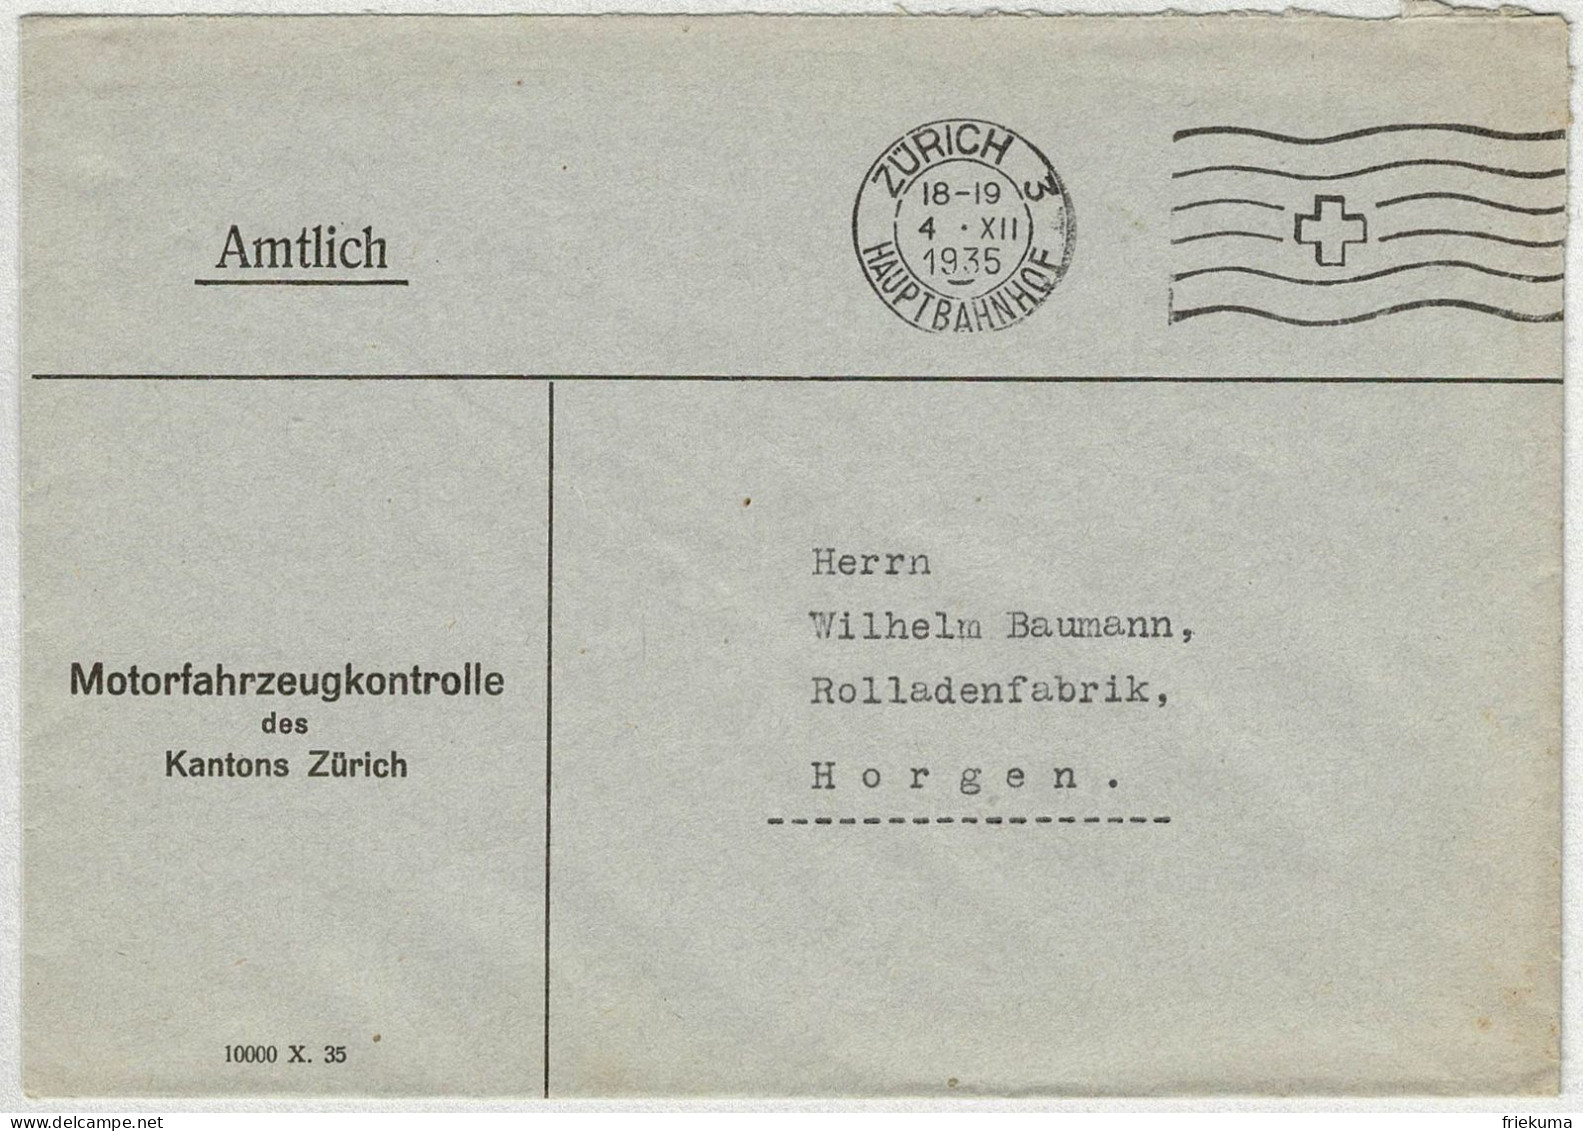 Schweiz 1935, Brief Amtlich Zürich Hauptbahnhof - Horgen - Poststempel